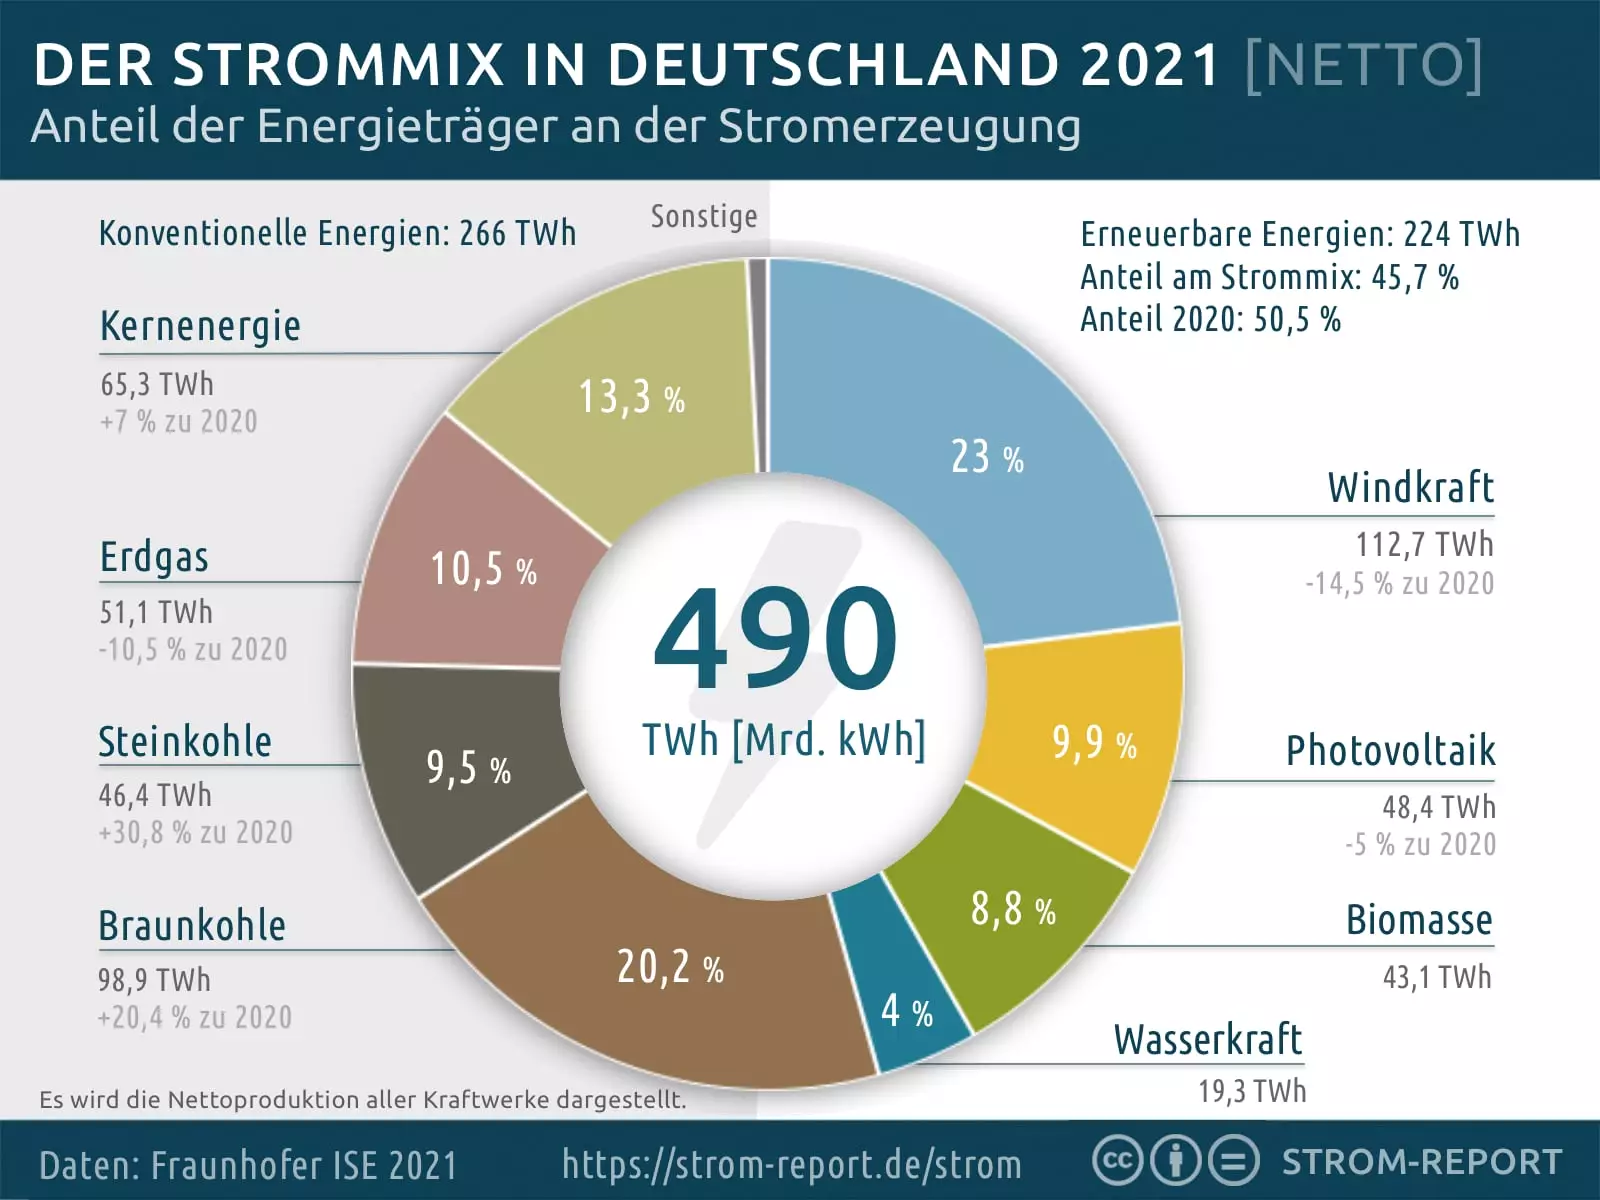 Strommix 2021: Stromerzeugung in Deutschland [Netto]